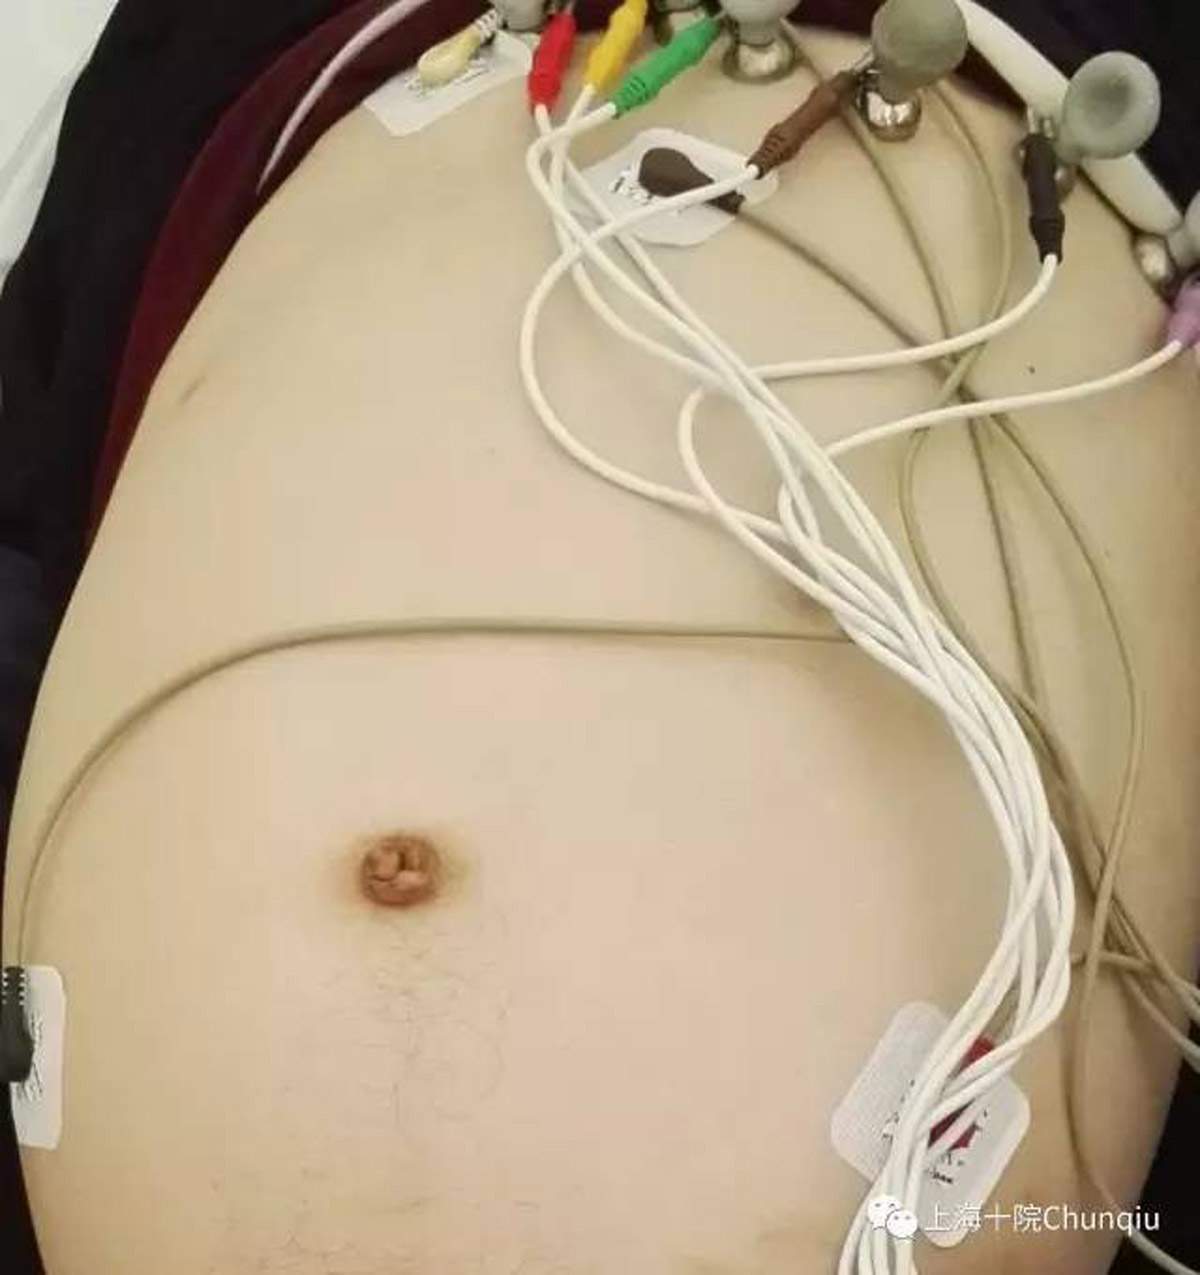 Constipé depuis sa naissance, un homme se fait retirer 13 kg de matières fécales de ses intestins (Photos)